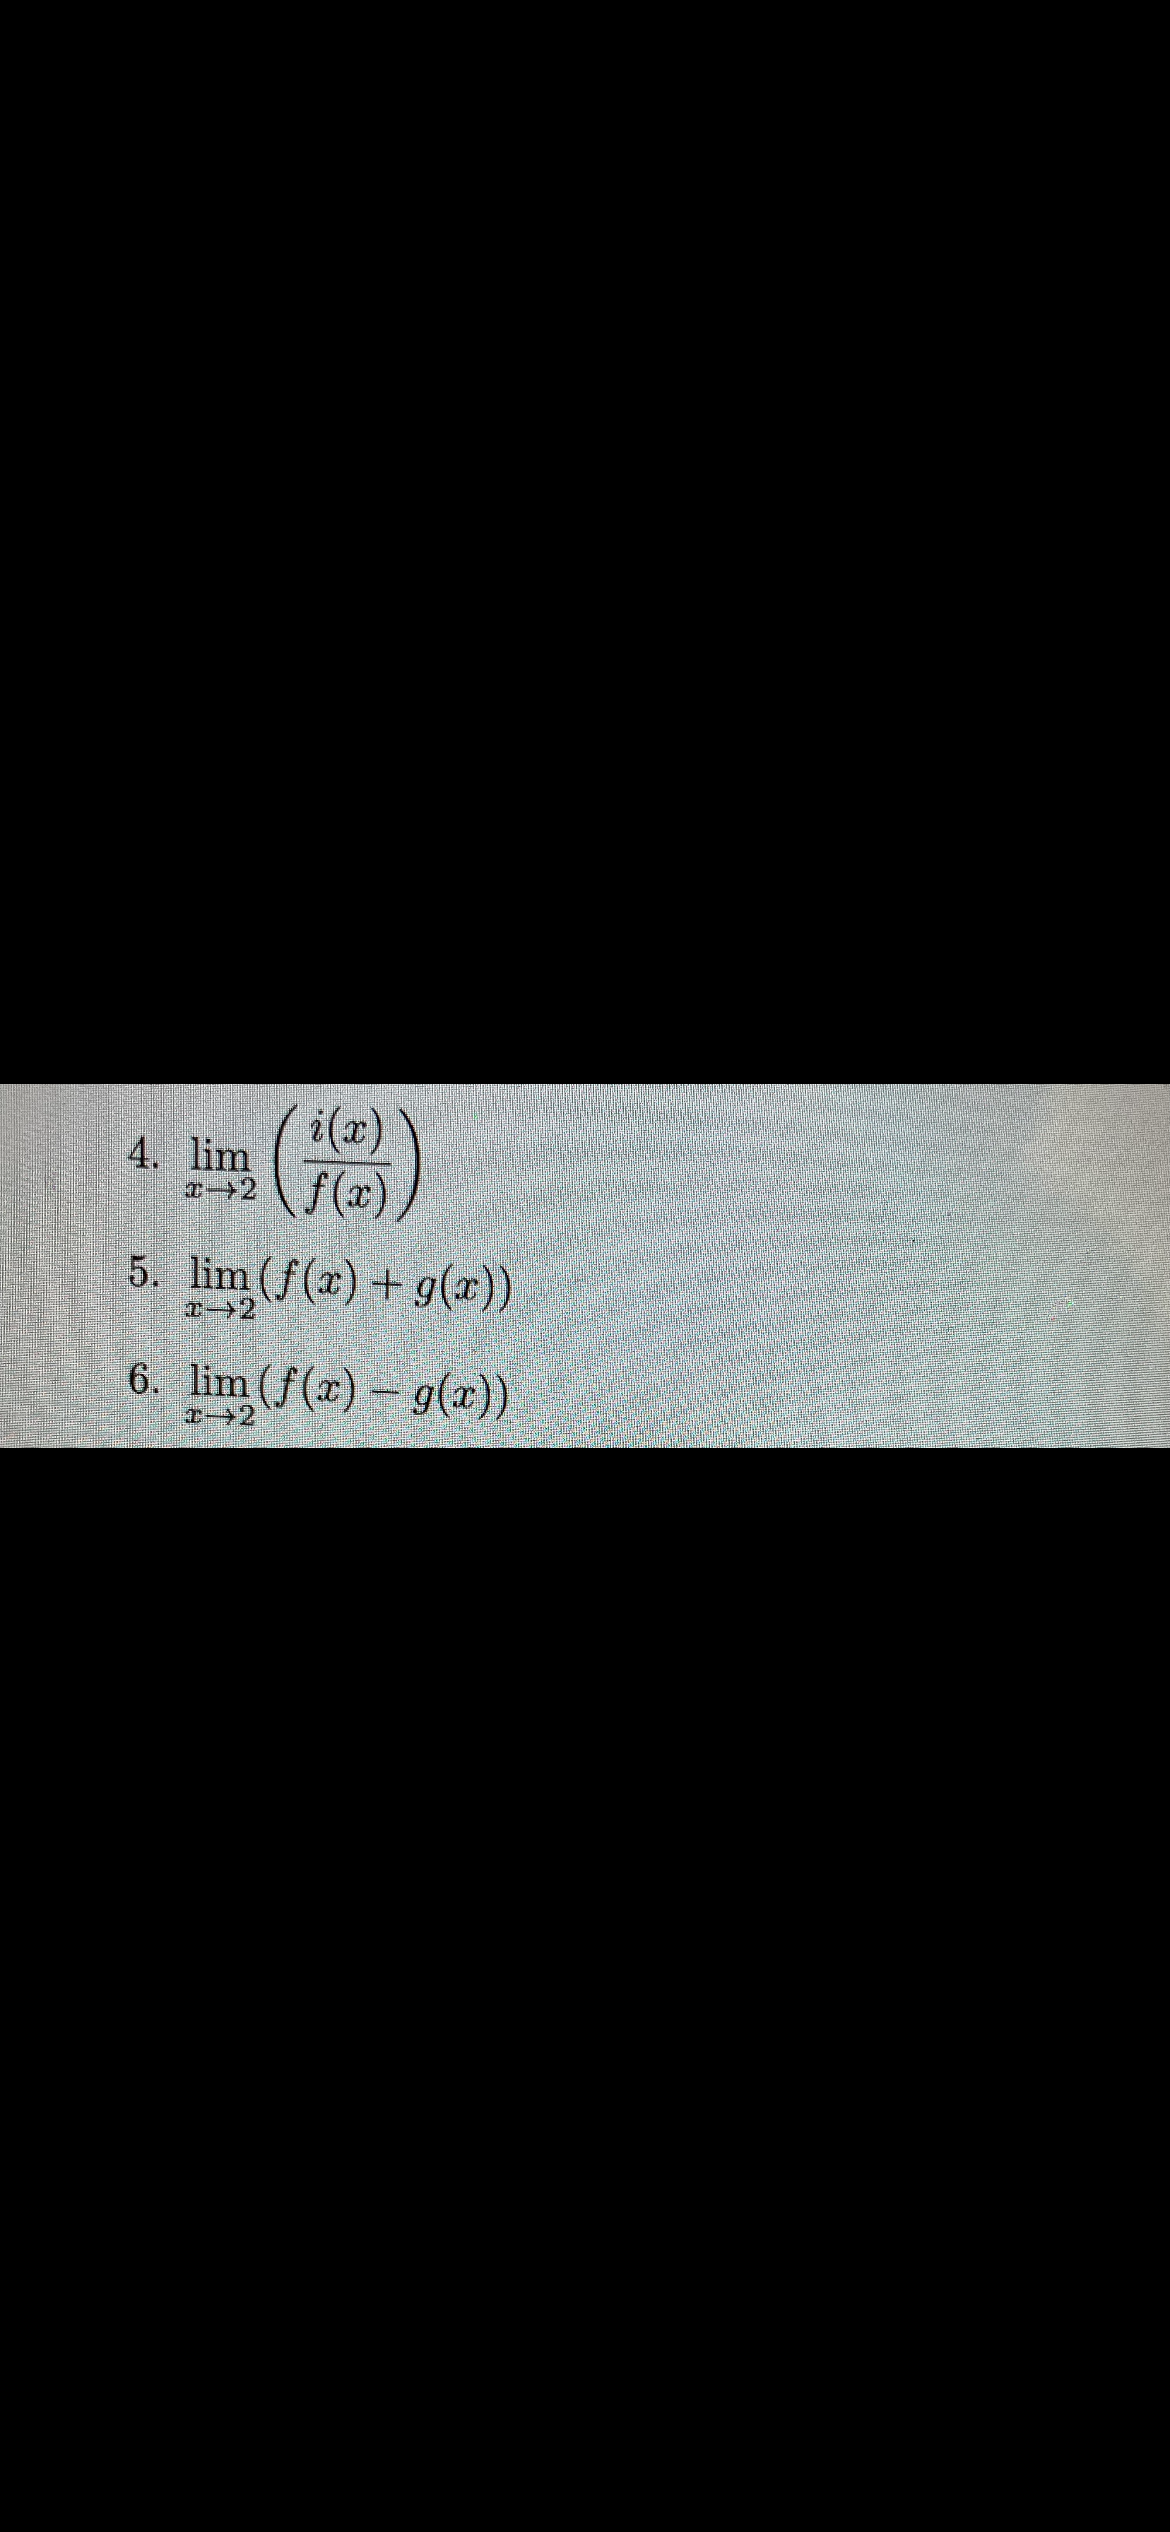 i(x)
4. lim
の→2
5. lim (f(x) + g(x))
6. lim (f(x) – g(x))
